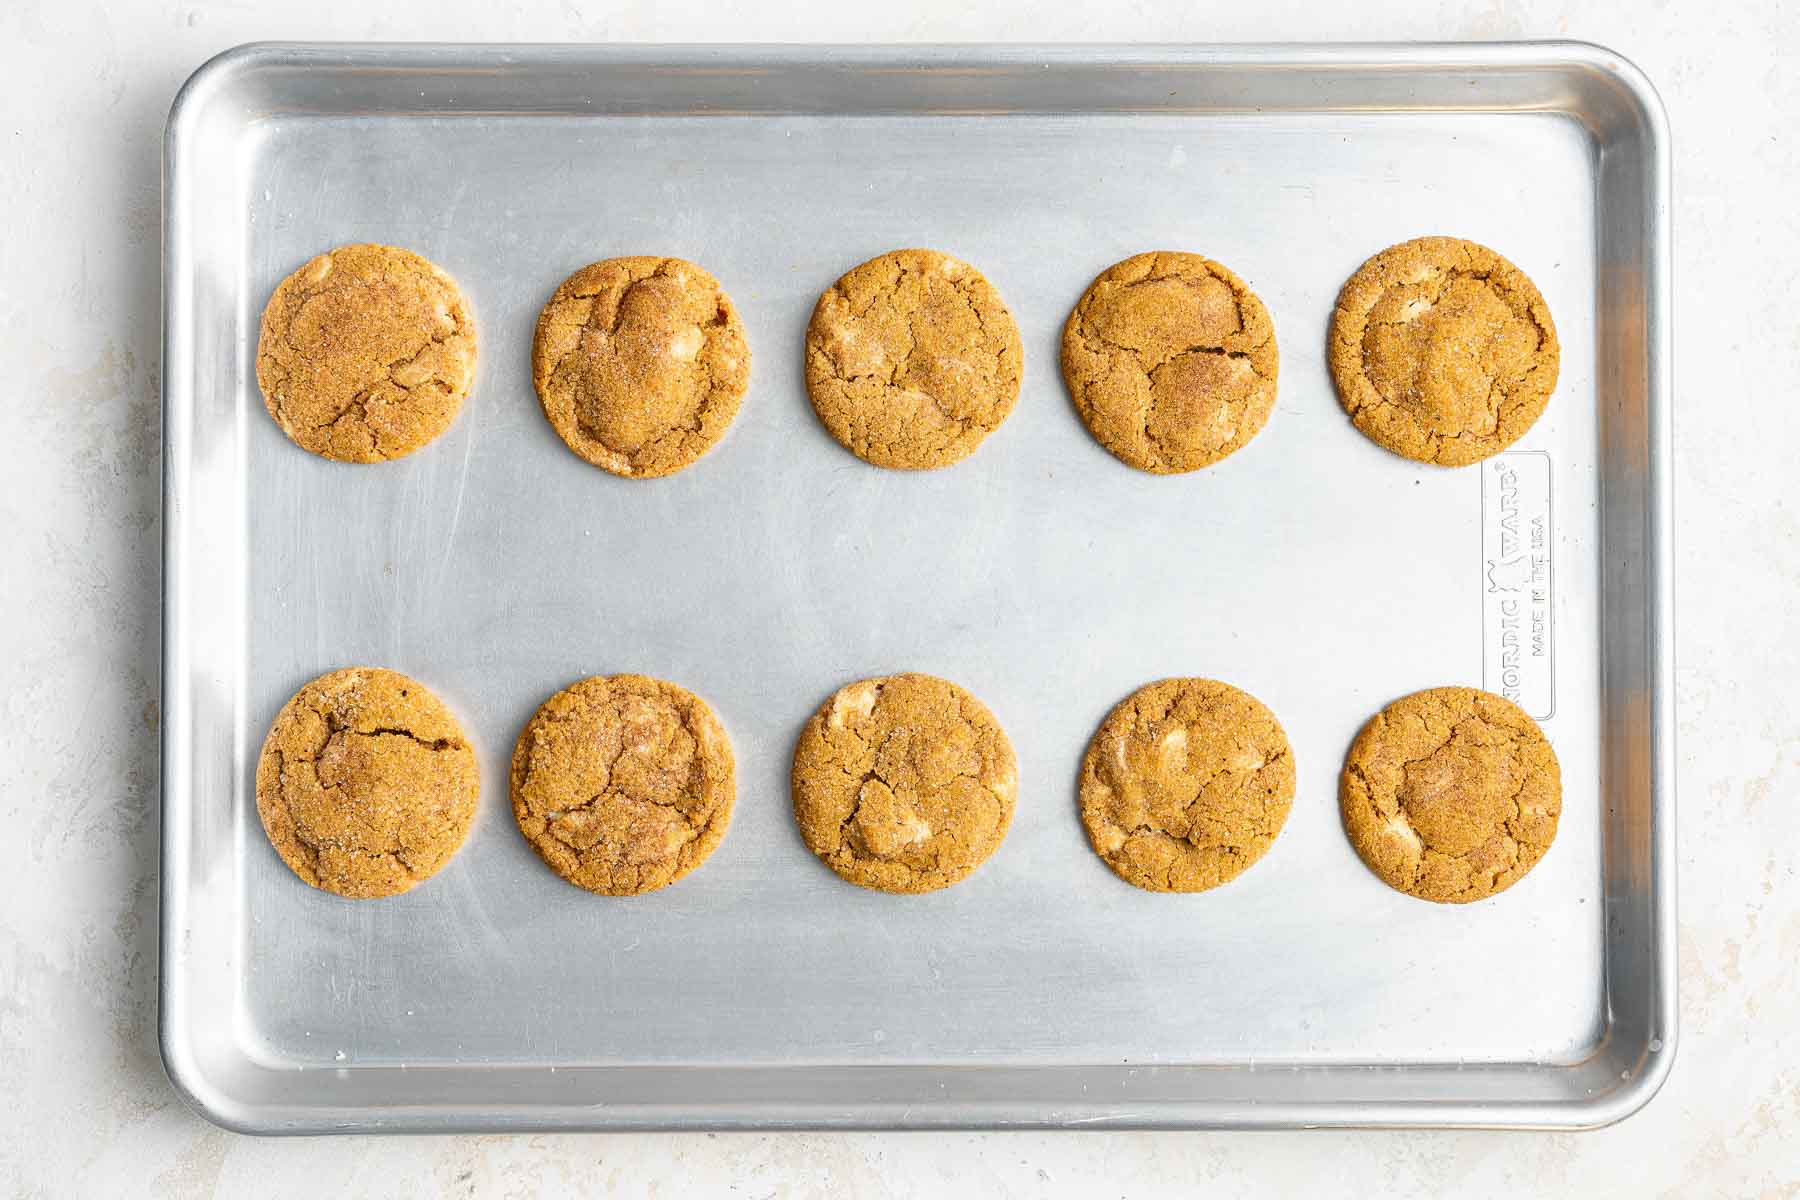 Ten freshly baked orange treats on silver cookie pan.